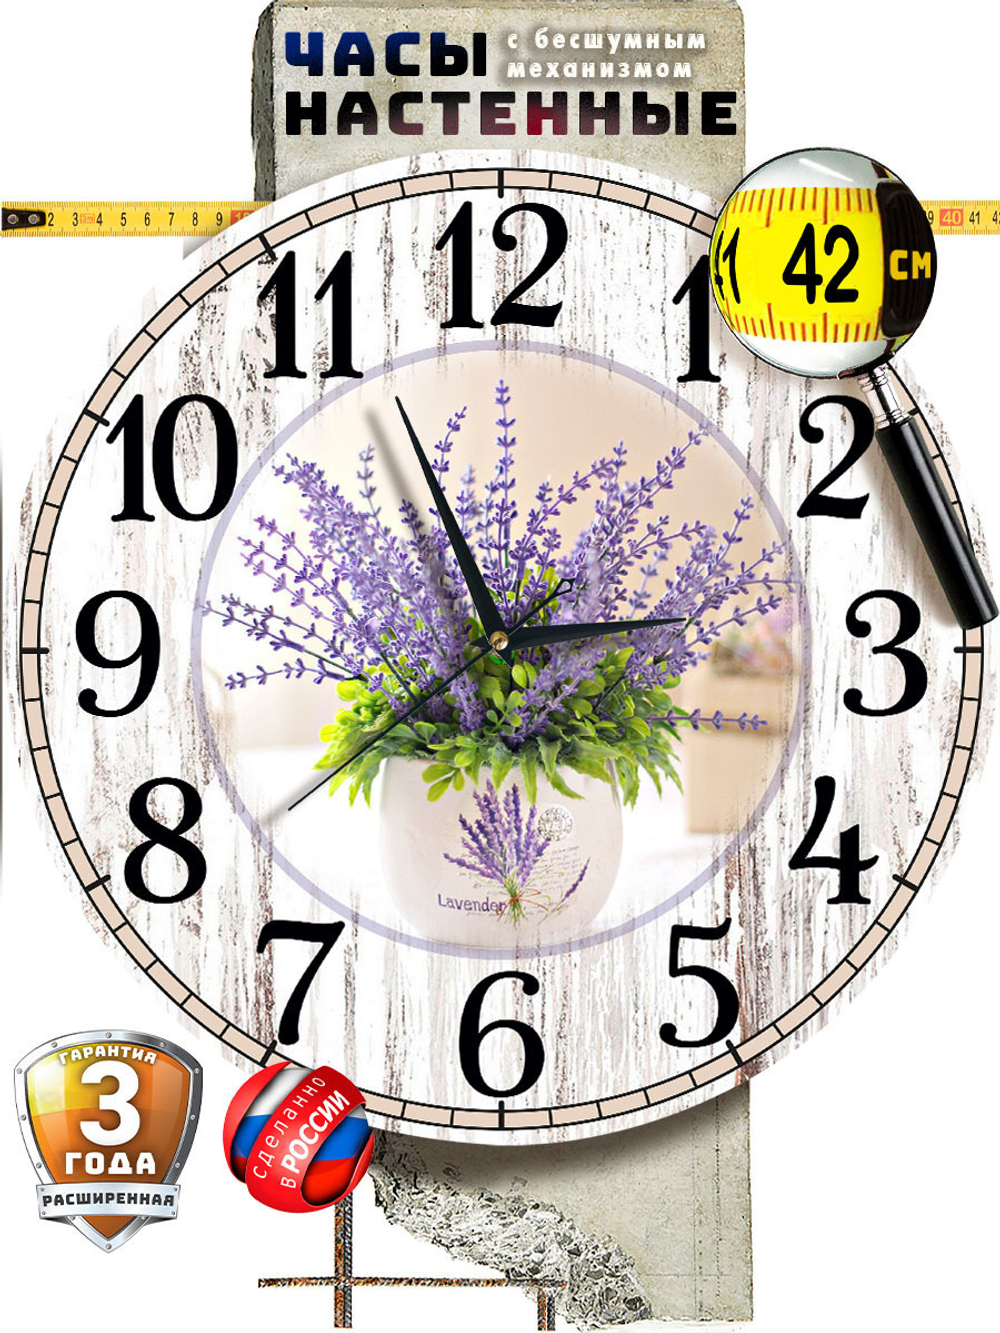 Часы настенные большие из МДФ 42 см плавный бесшумный механизм Декор для дома, подарок